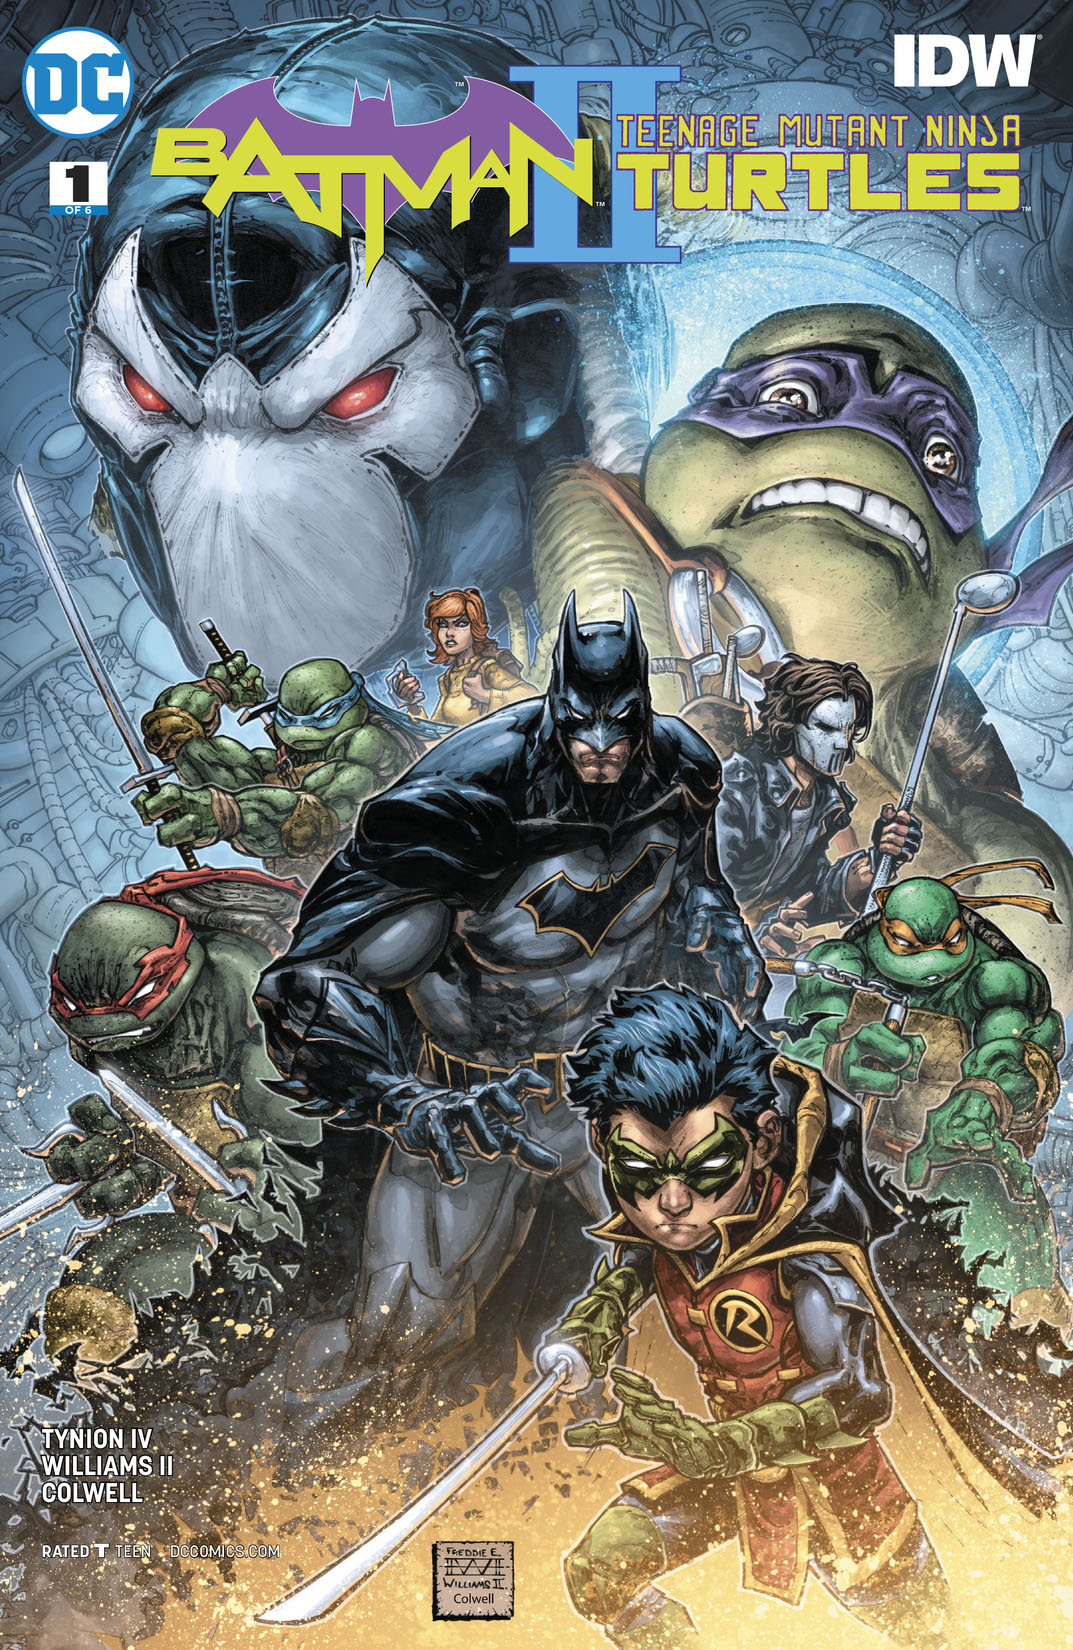 Batman/Teenage Mutant Ninja Turtles II #1 preview images